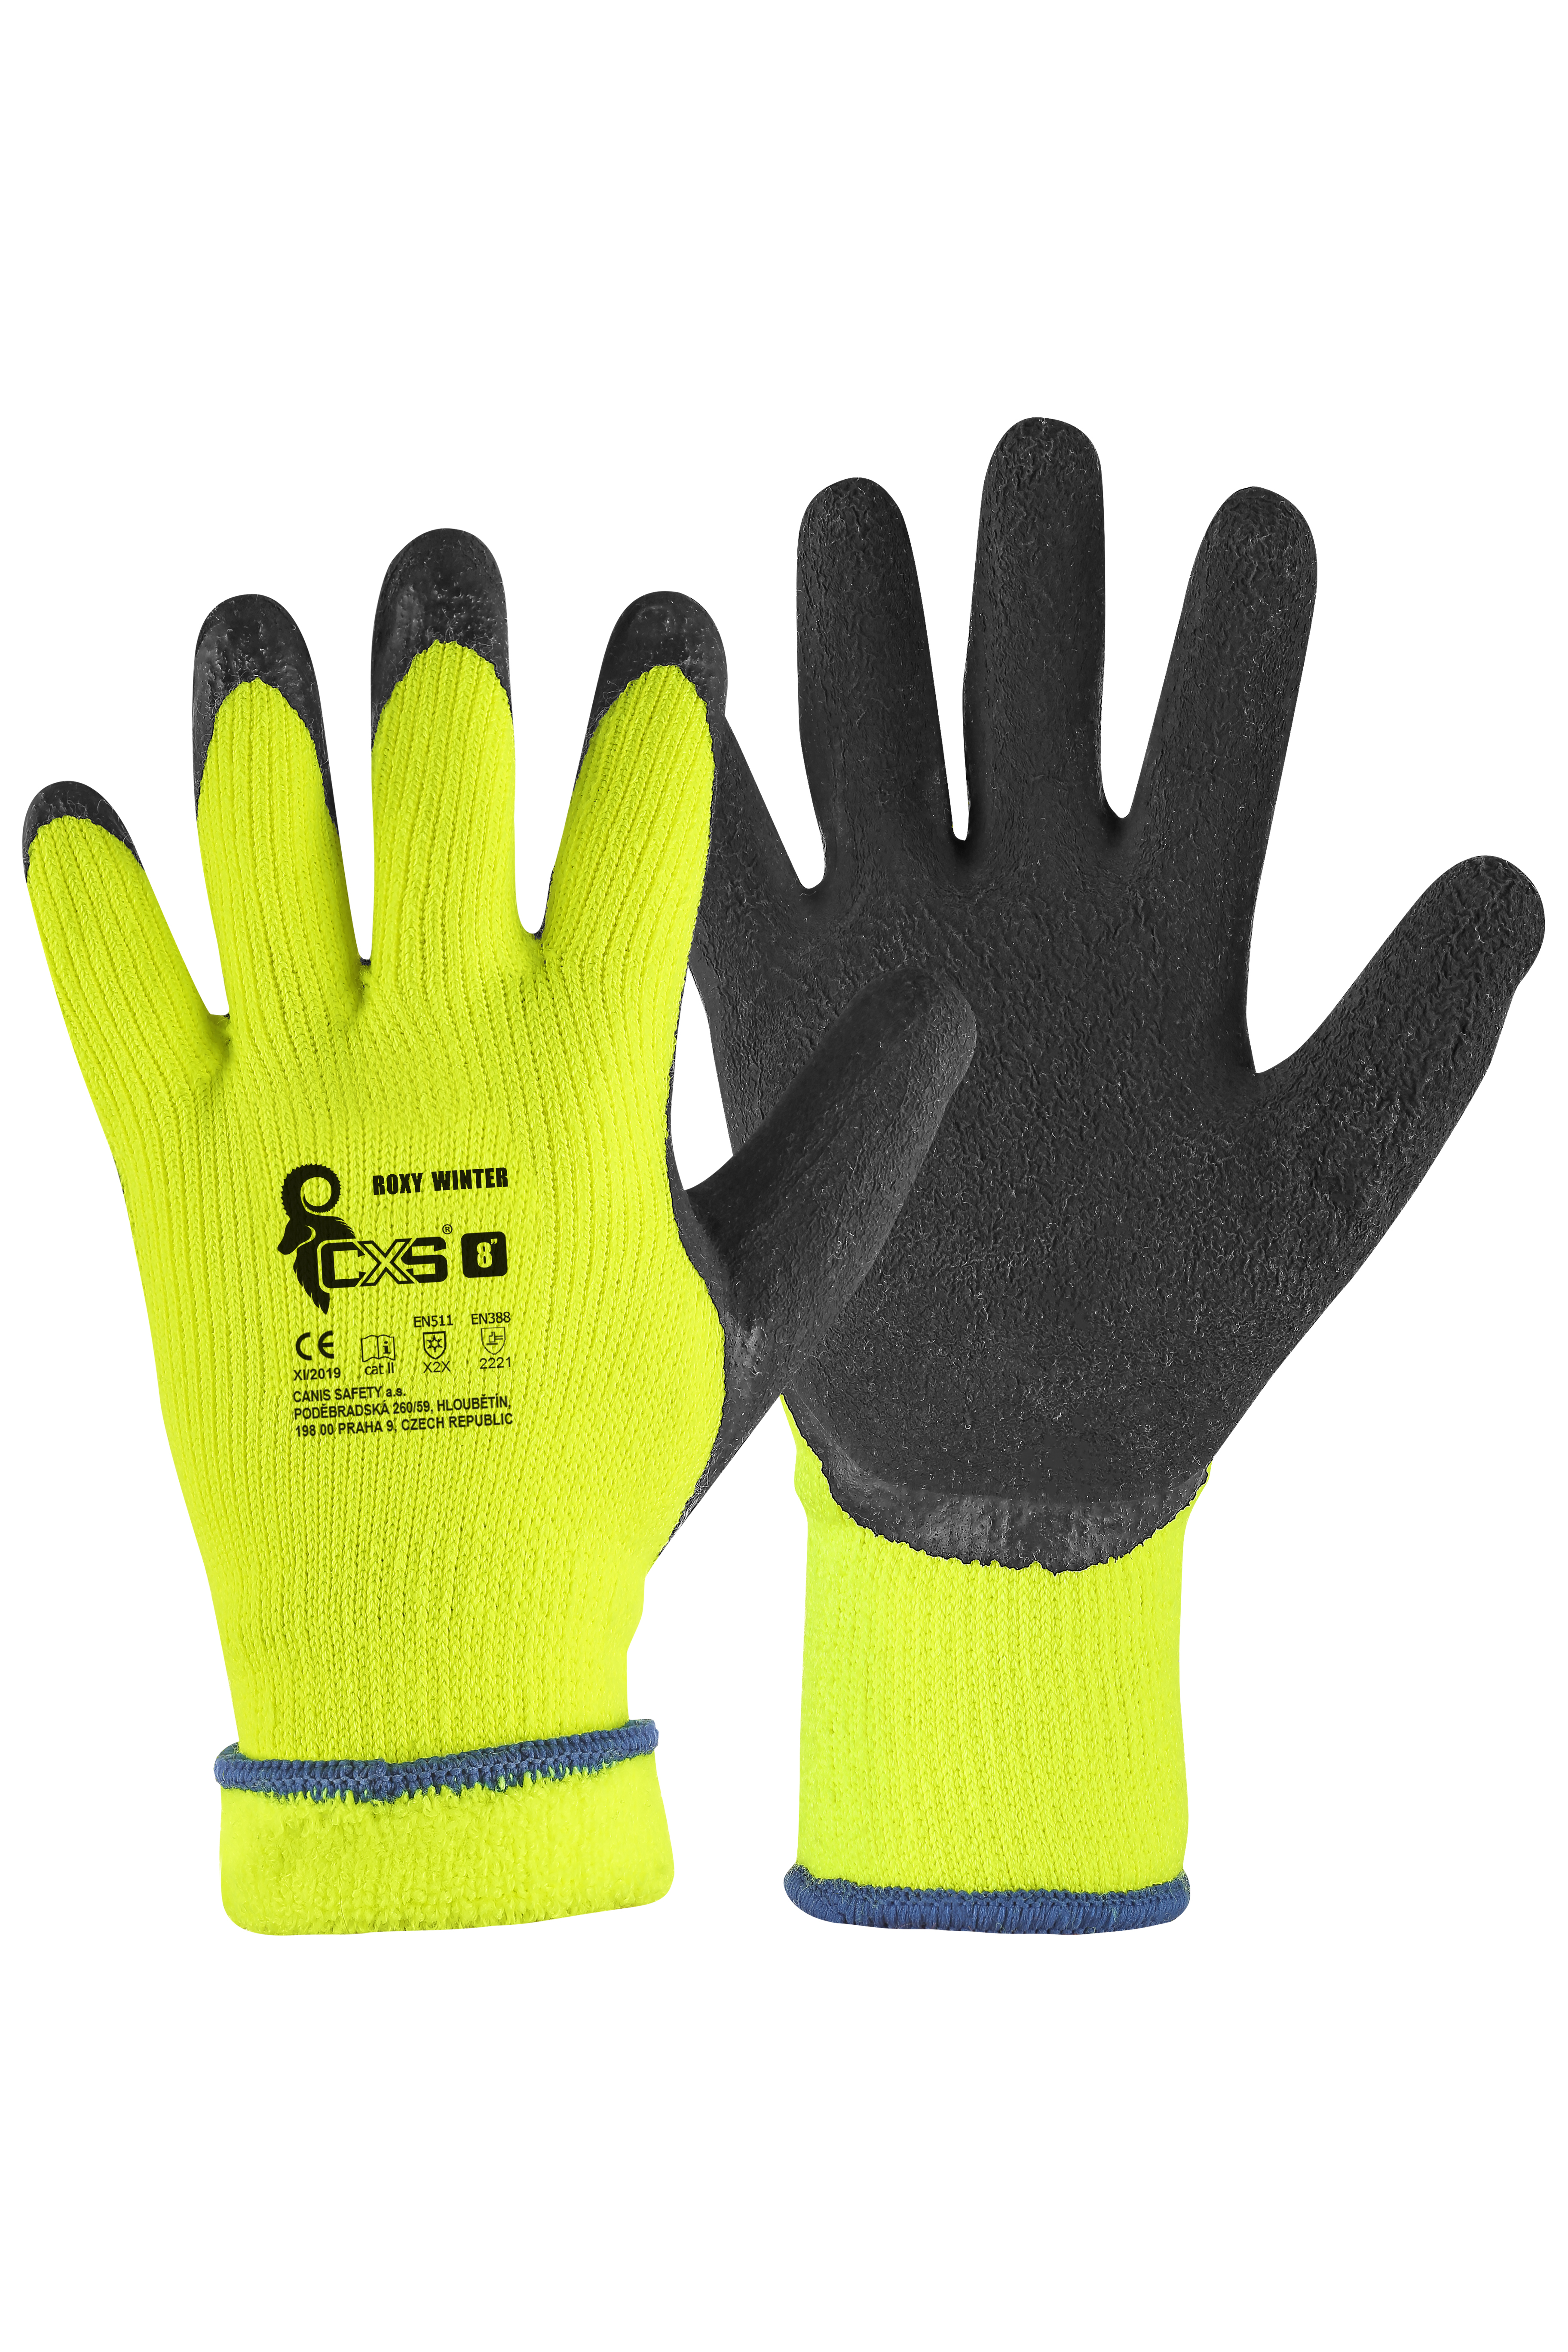 rukavice Roxy Winter, zimní, máčené v latexu, velikost 10 0.11 Kg TOP Sklad4 606069 446